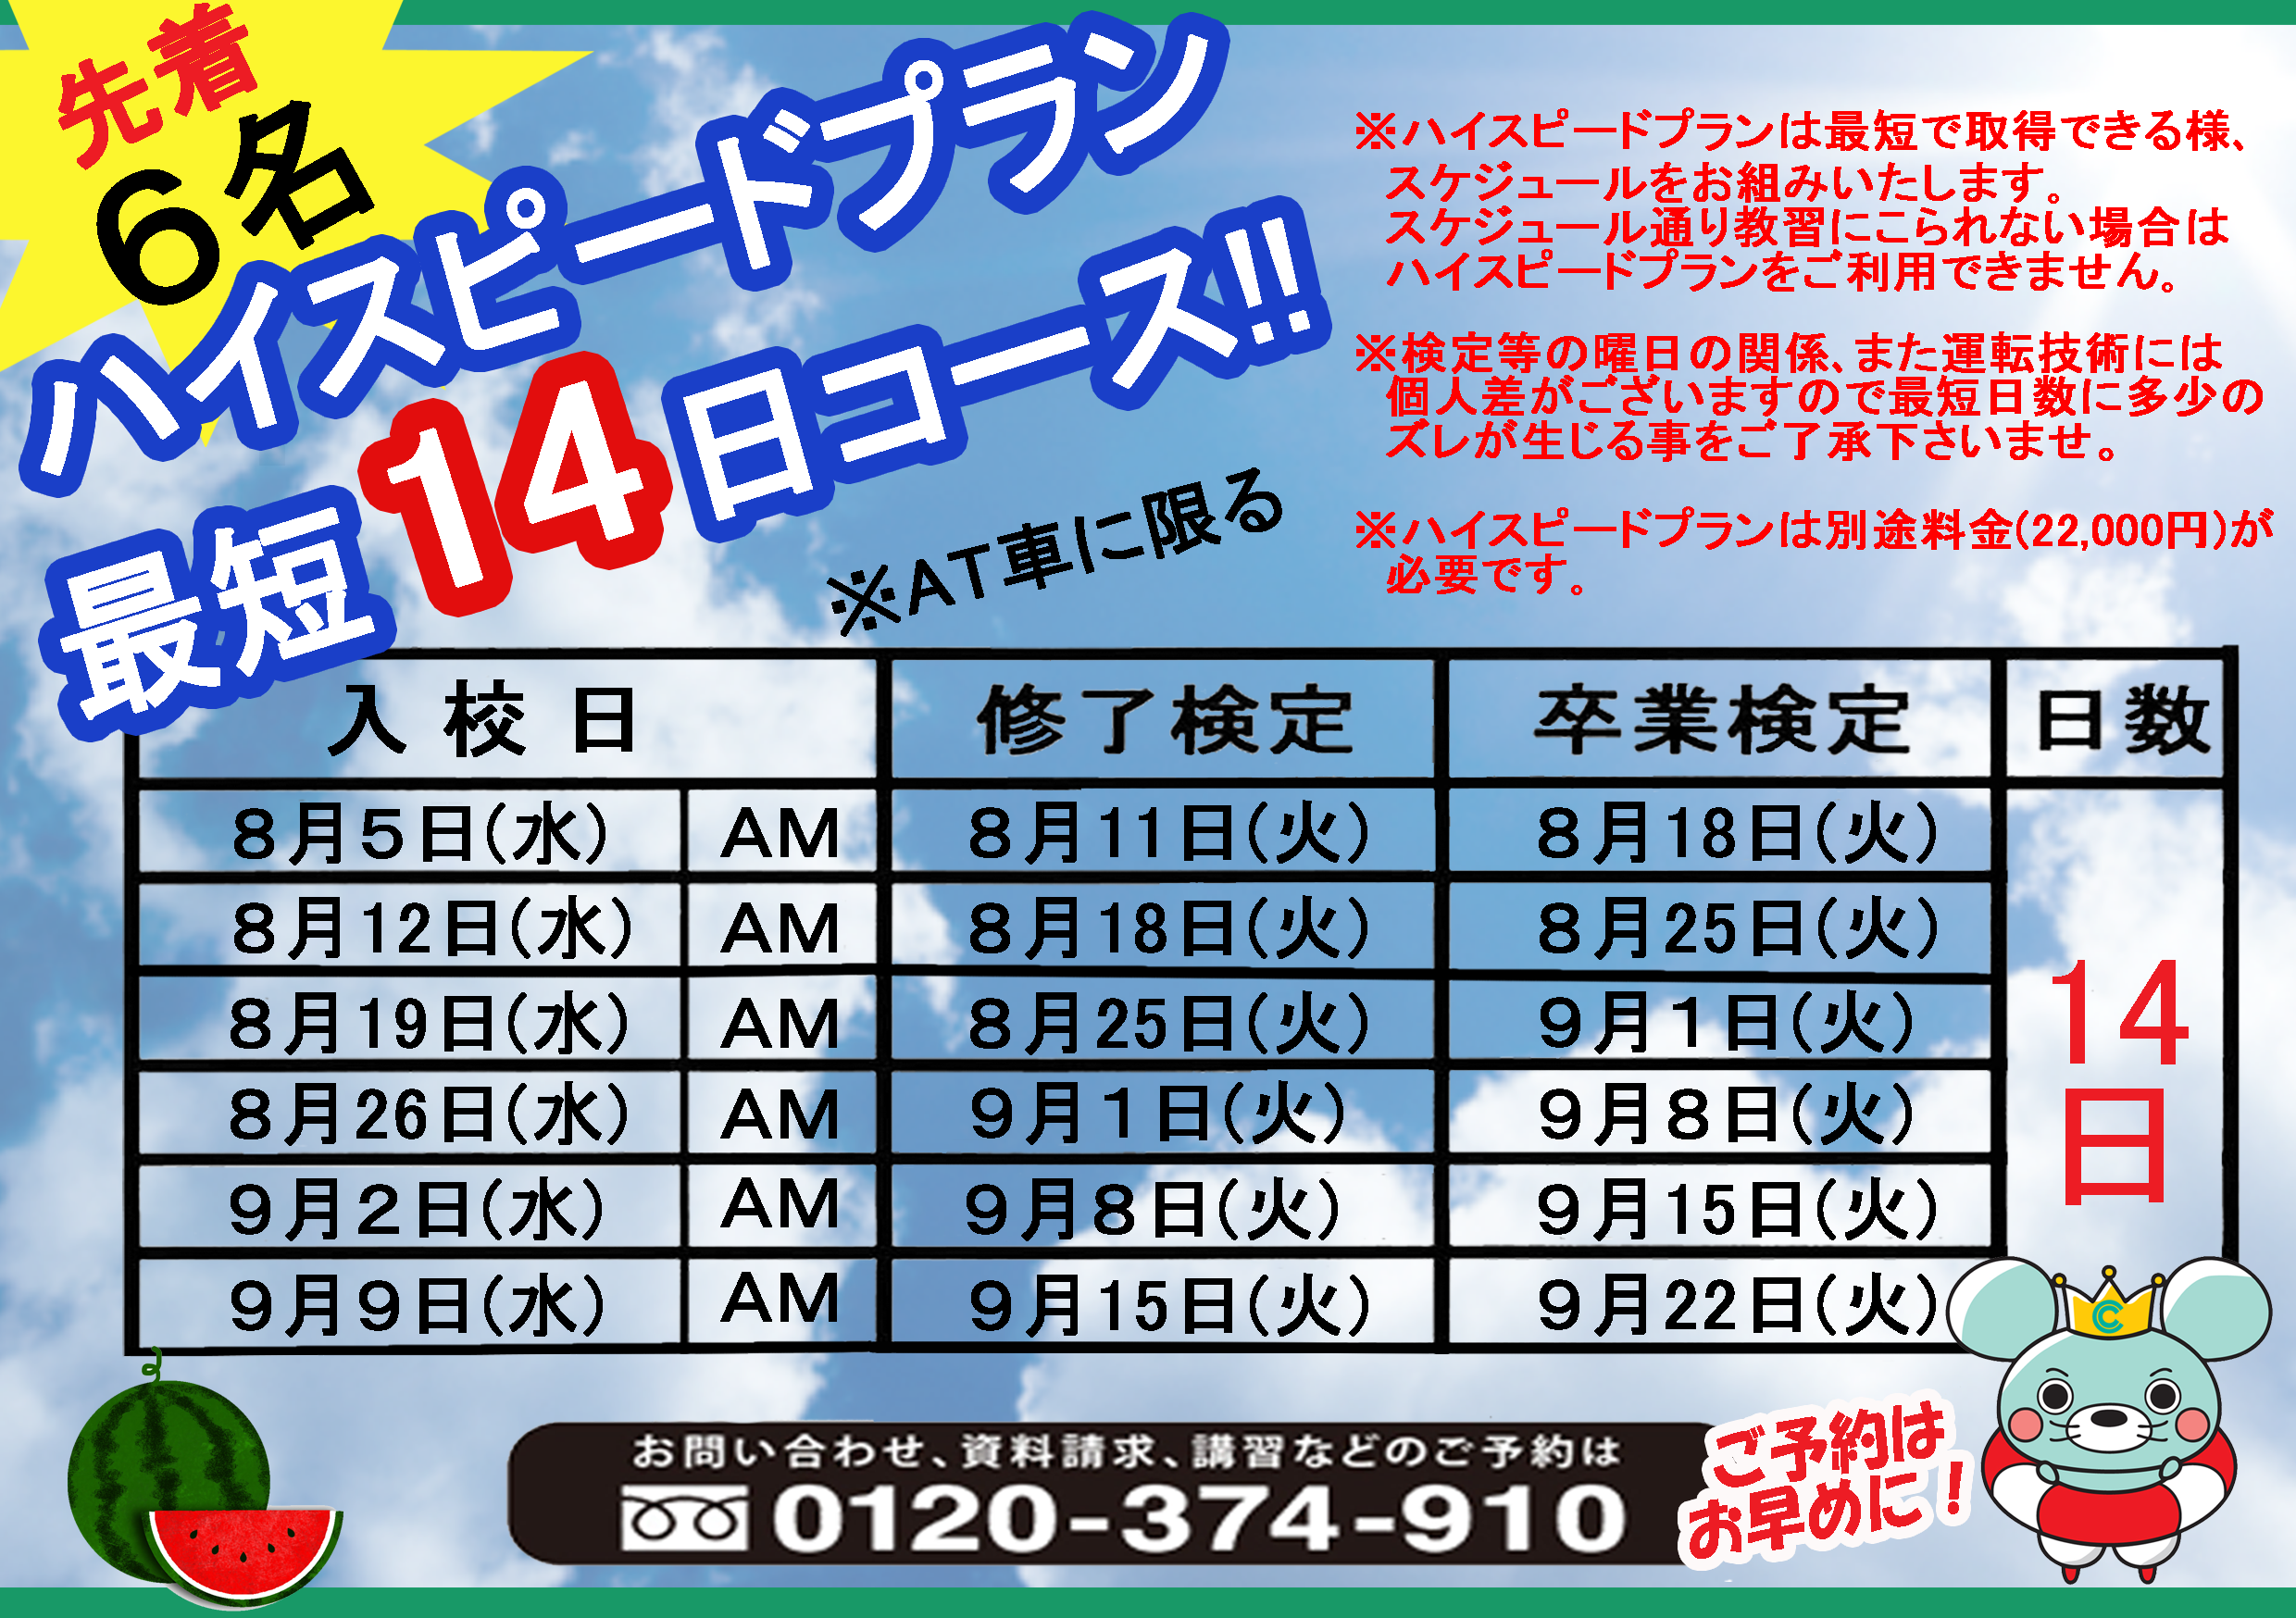 キャンペーン情報 徳島で免許取るなら徳島中央自動車教習所